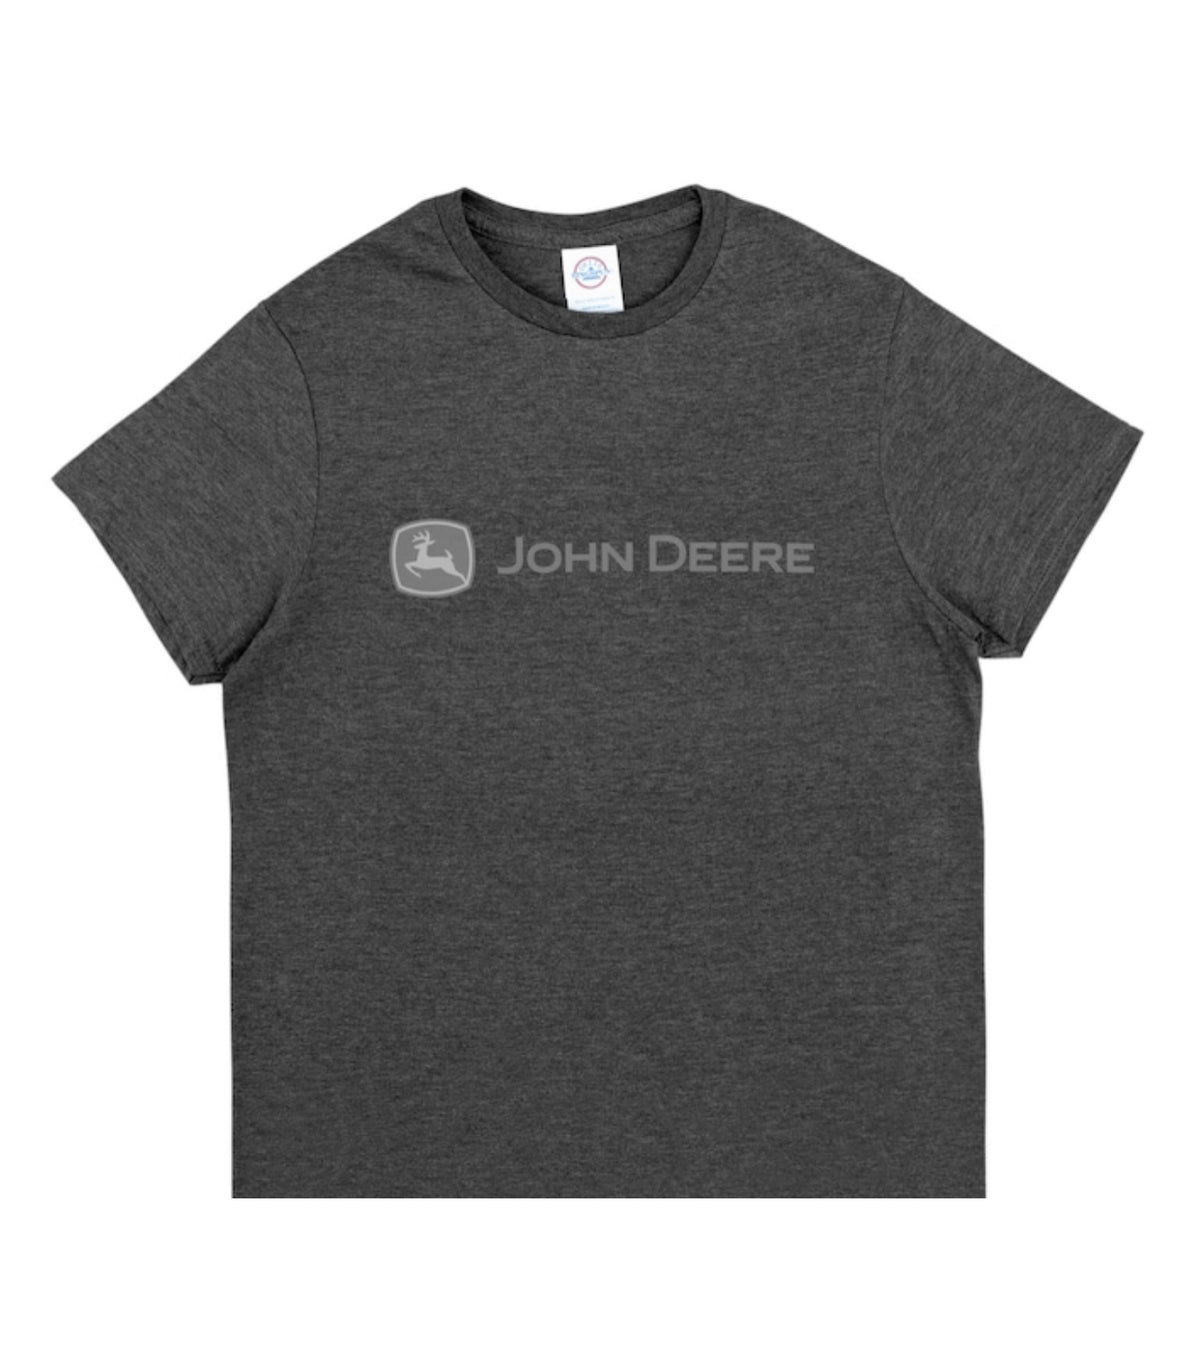 John Deere Unisex Short Sleeve Cotton T-Shirt